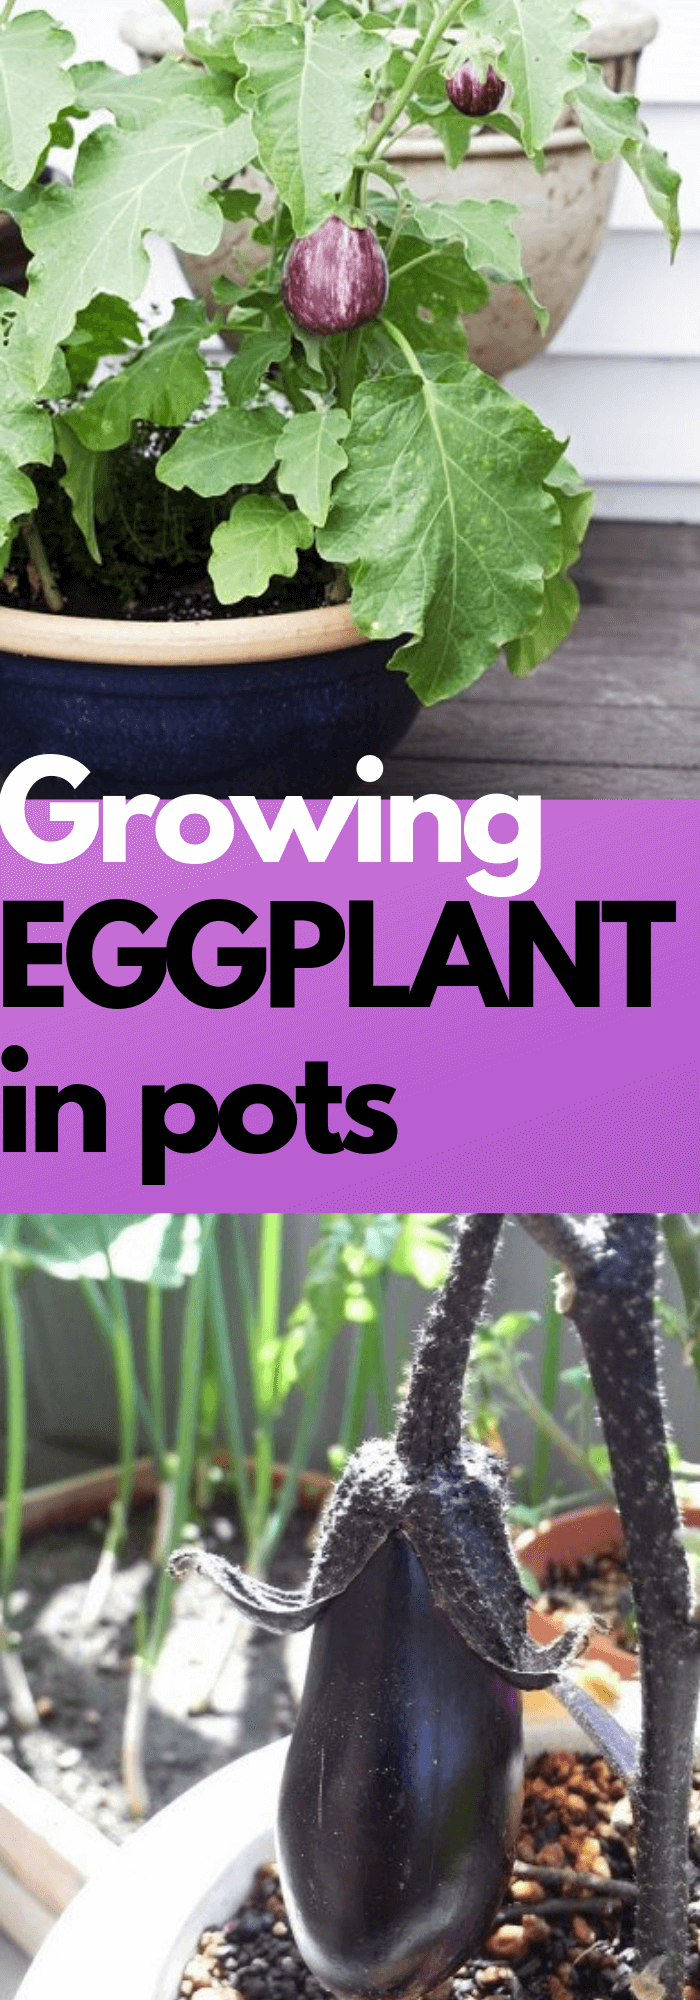 Growing Eggplant in pots